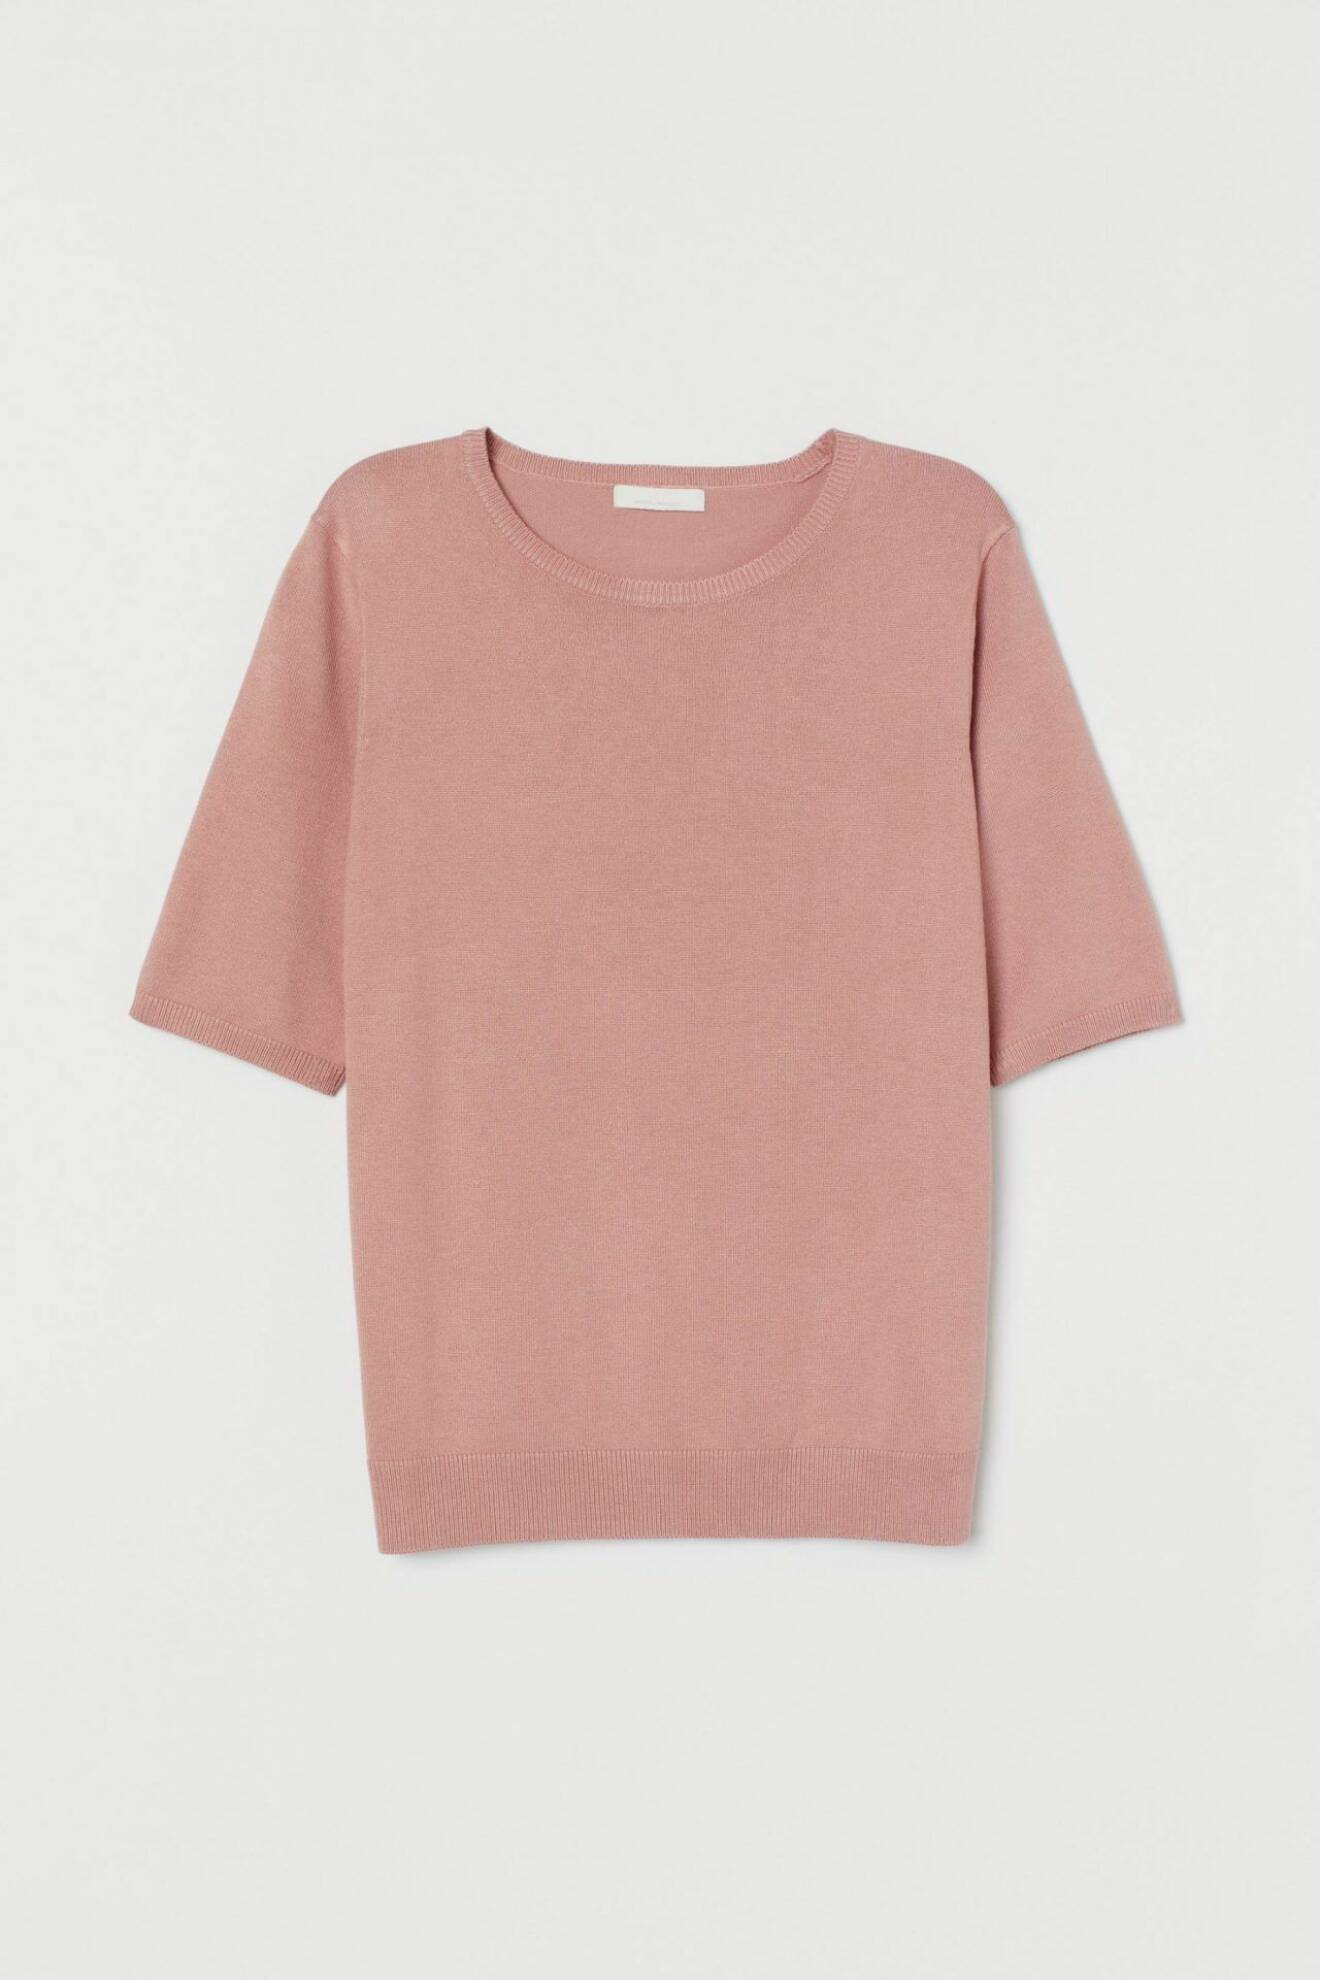 Rosa tröja från H&M